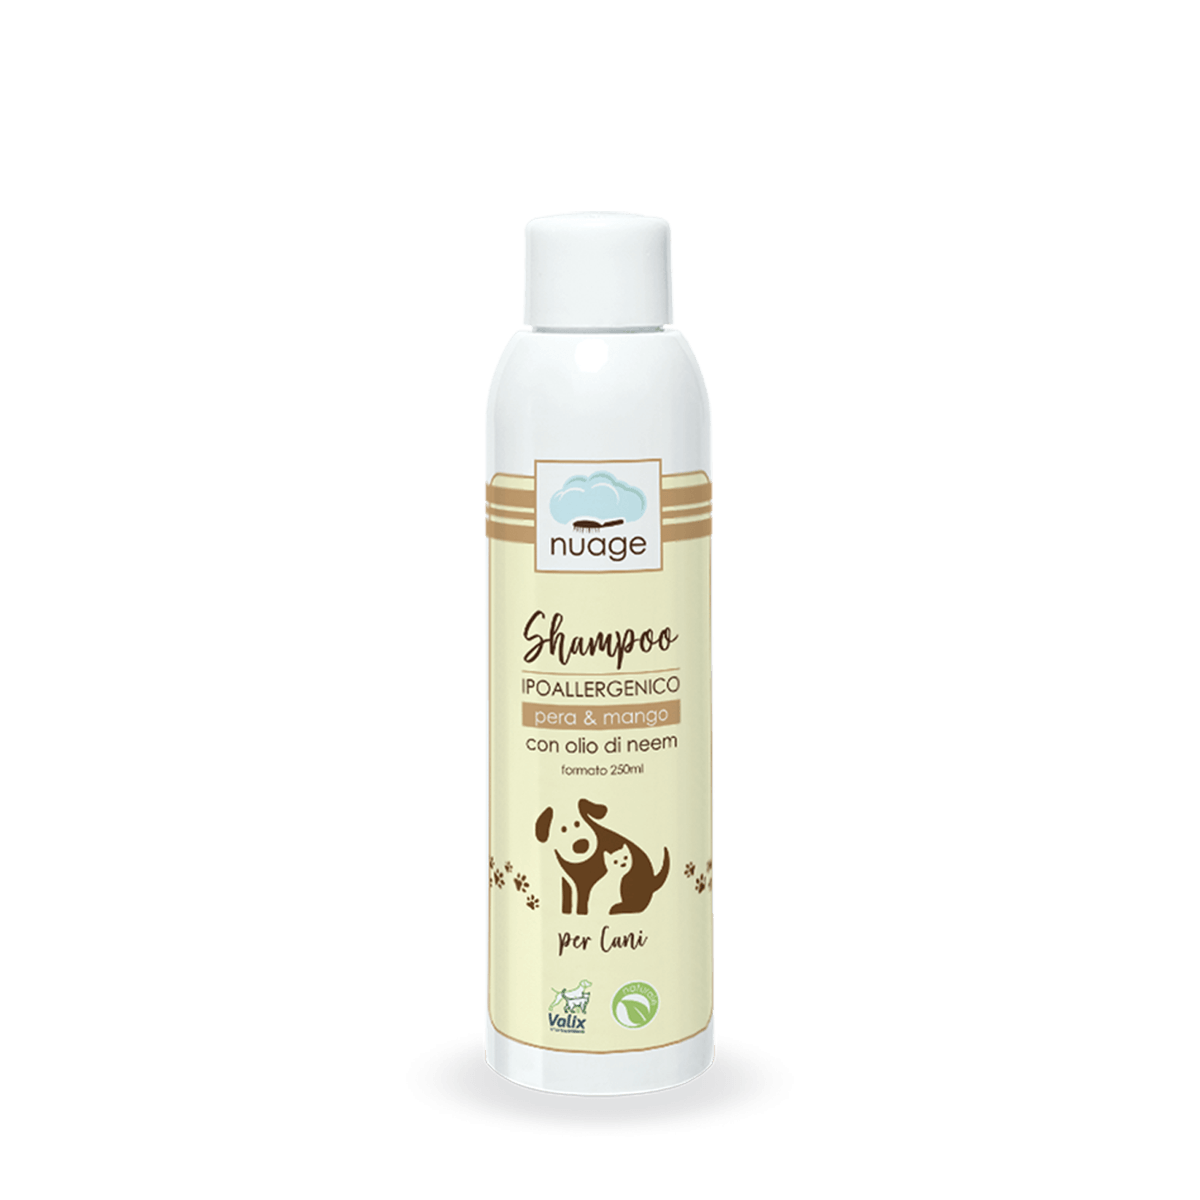 Shampoo per Cani Olio di Neem - Valix Nutrition, soluzioni naturali per  cane e gatto